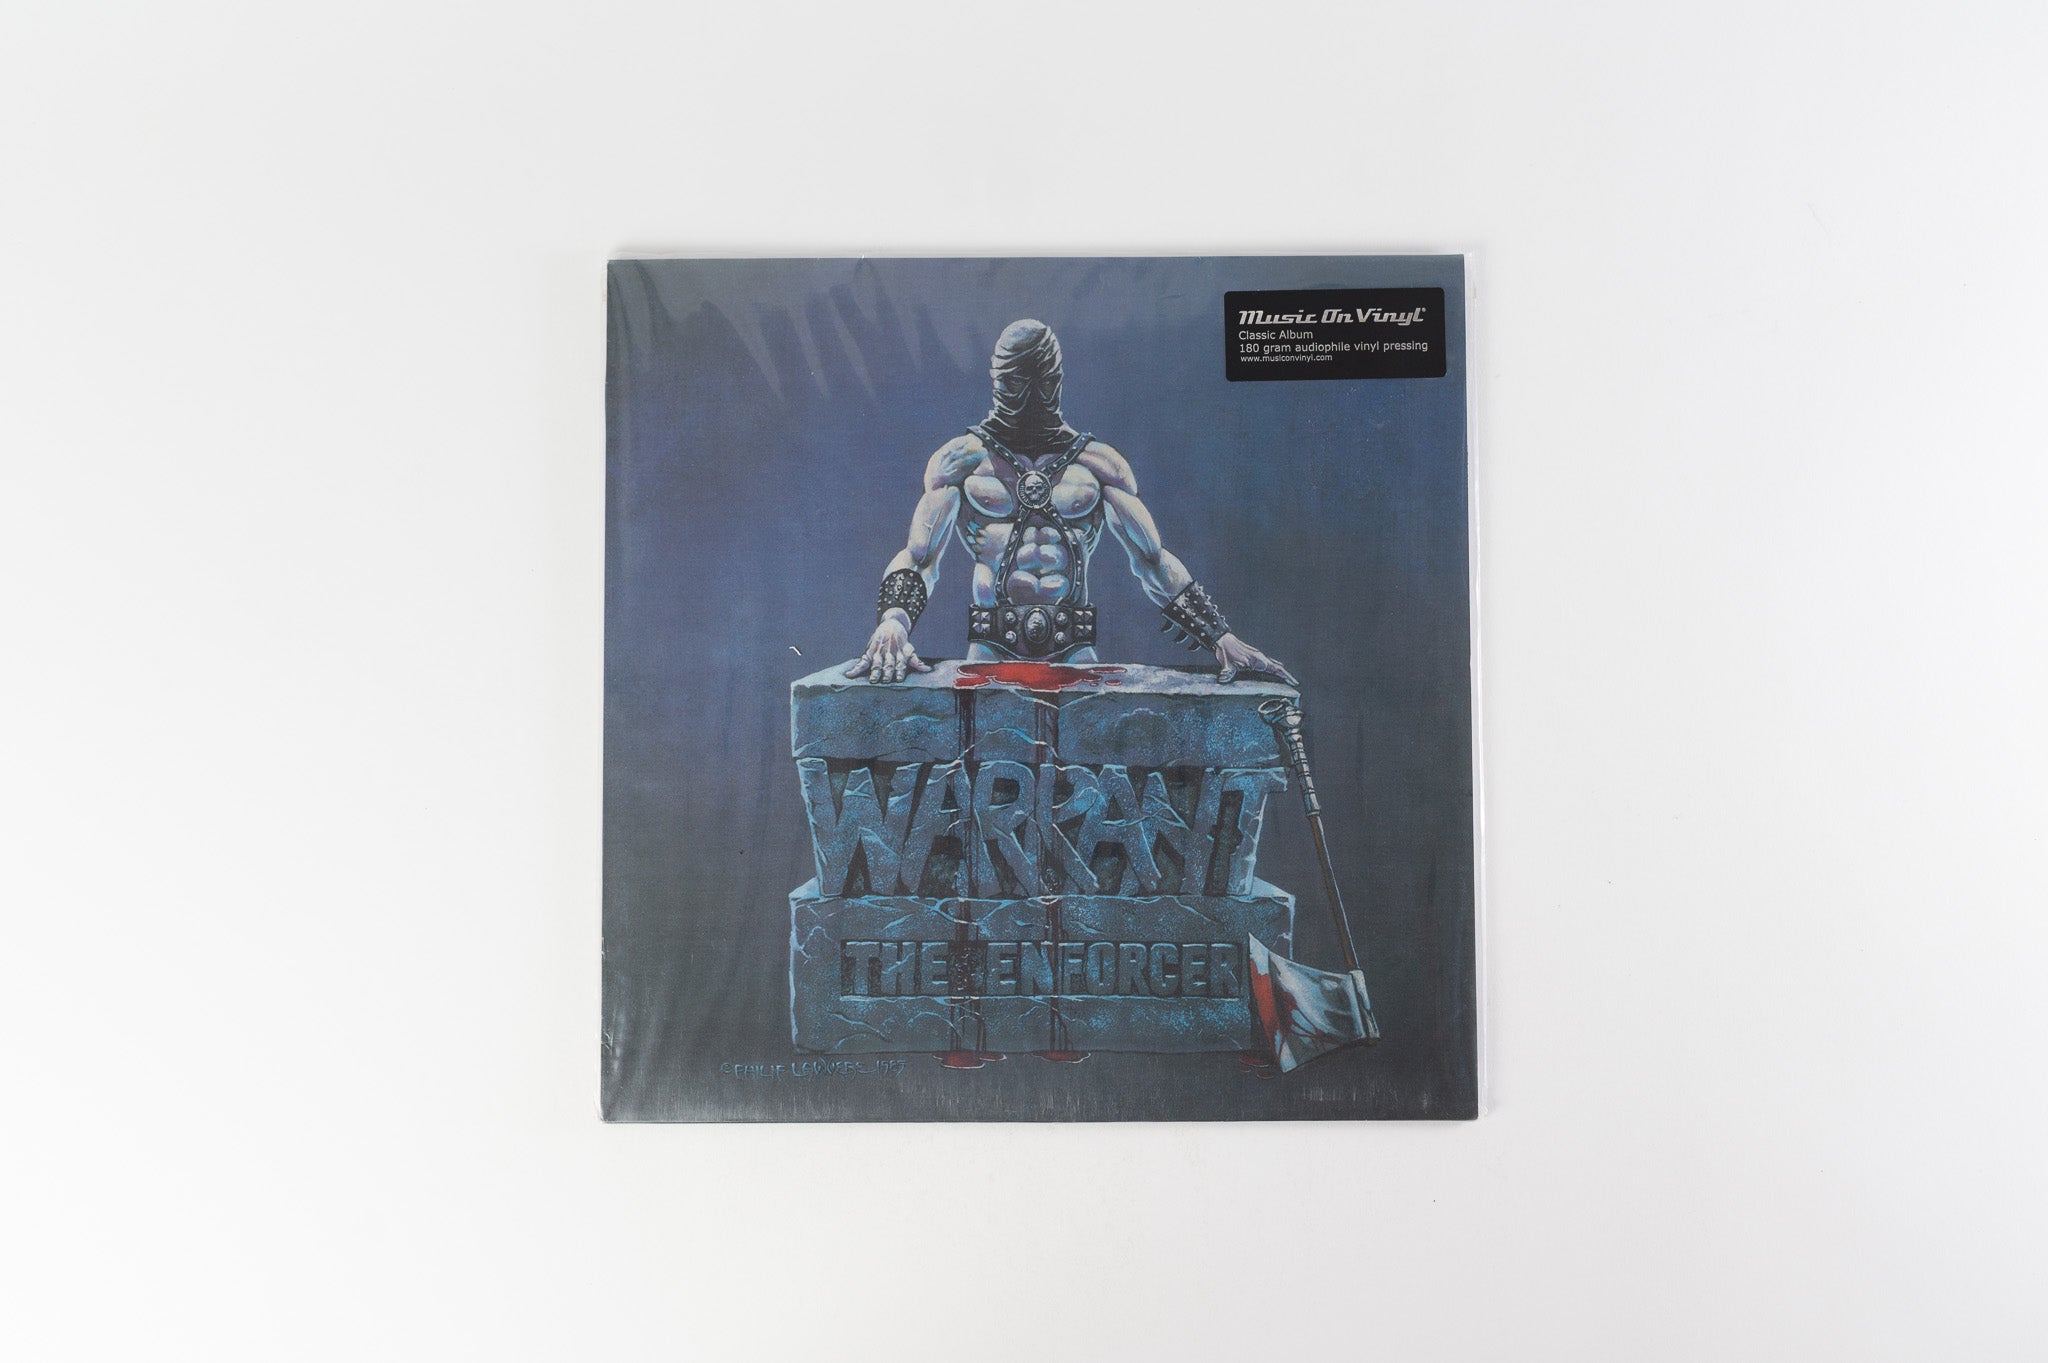 Warrant - The Enforcer Reissue on Music On Vinyl